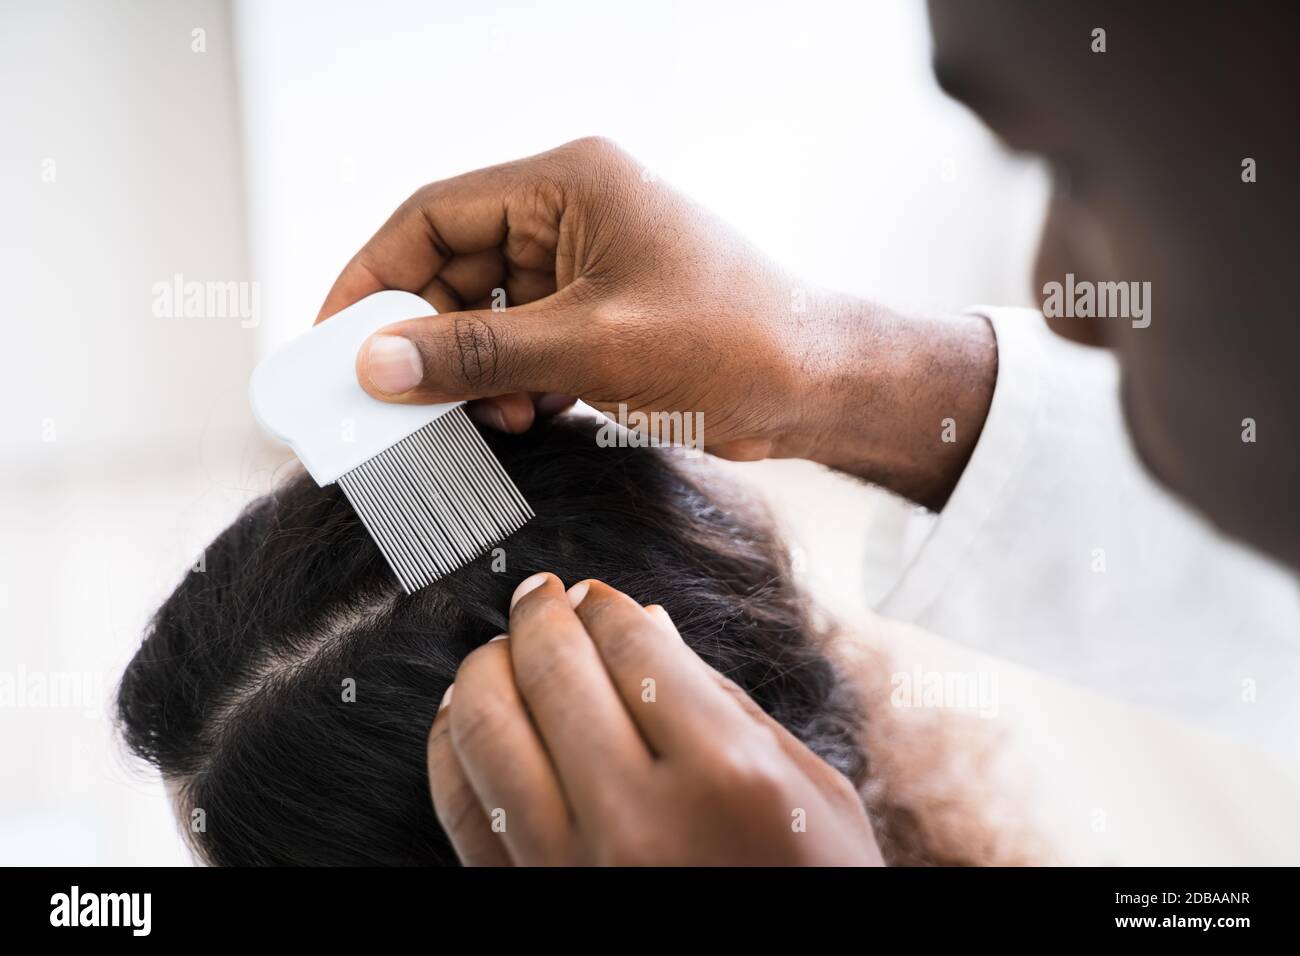 Nahaufnahme der Person Hand mit Läusen Kamm auf der Patientin Haar  Stockfotografie - Alamy